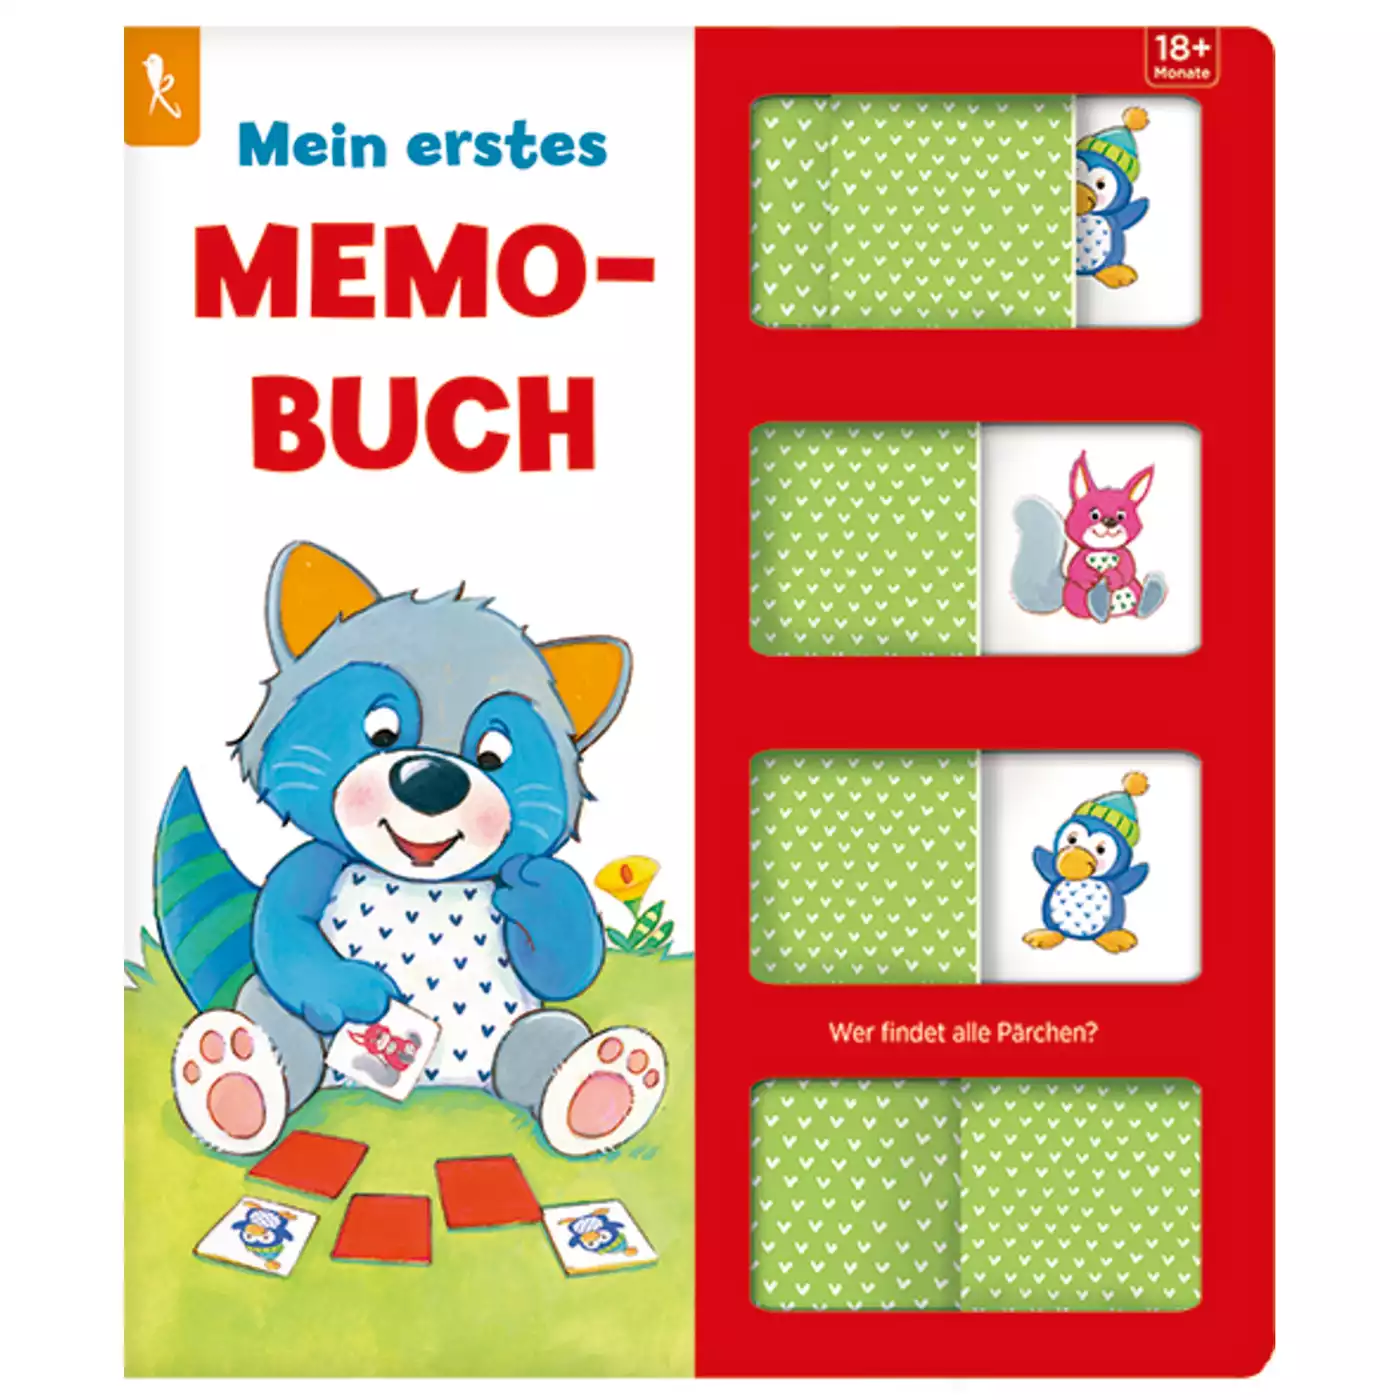 Mein erstes Memo-Buch - Wer findet alle Pärchen? COPPENRATH 2000577835300 3